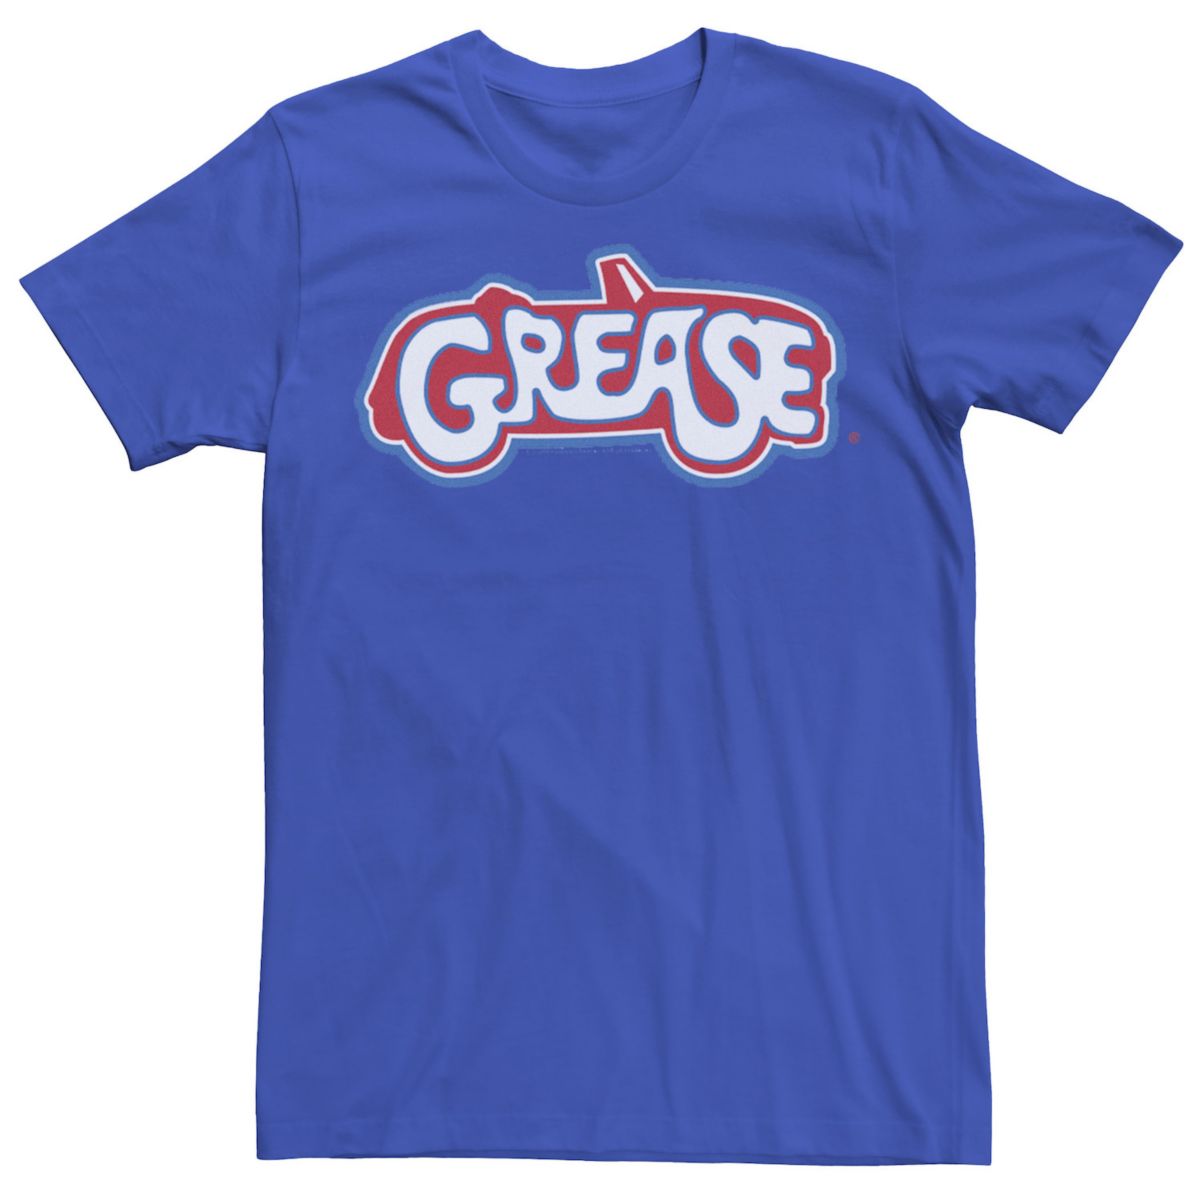 Мужская футболка с надписью Grease Car Silhouette и надписью Licensed Character